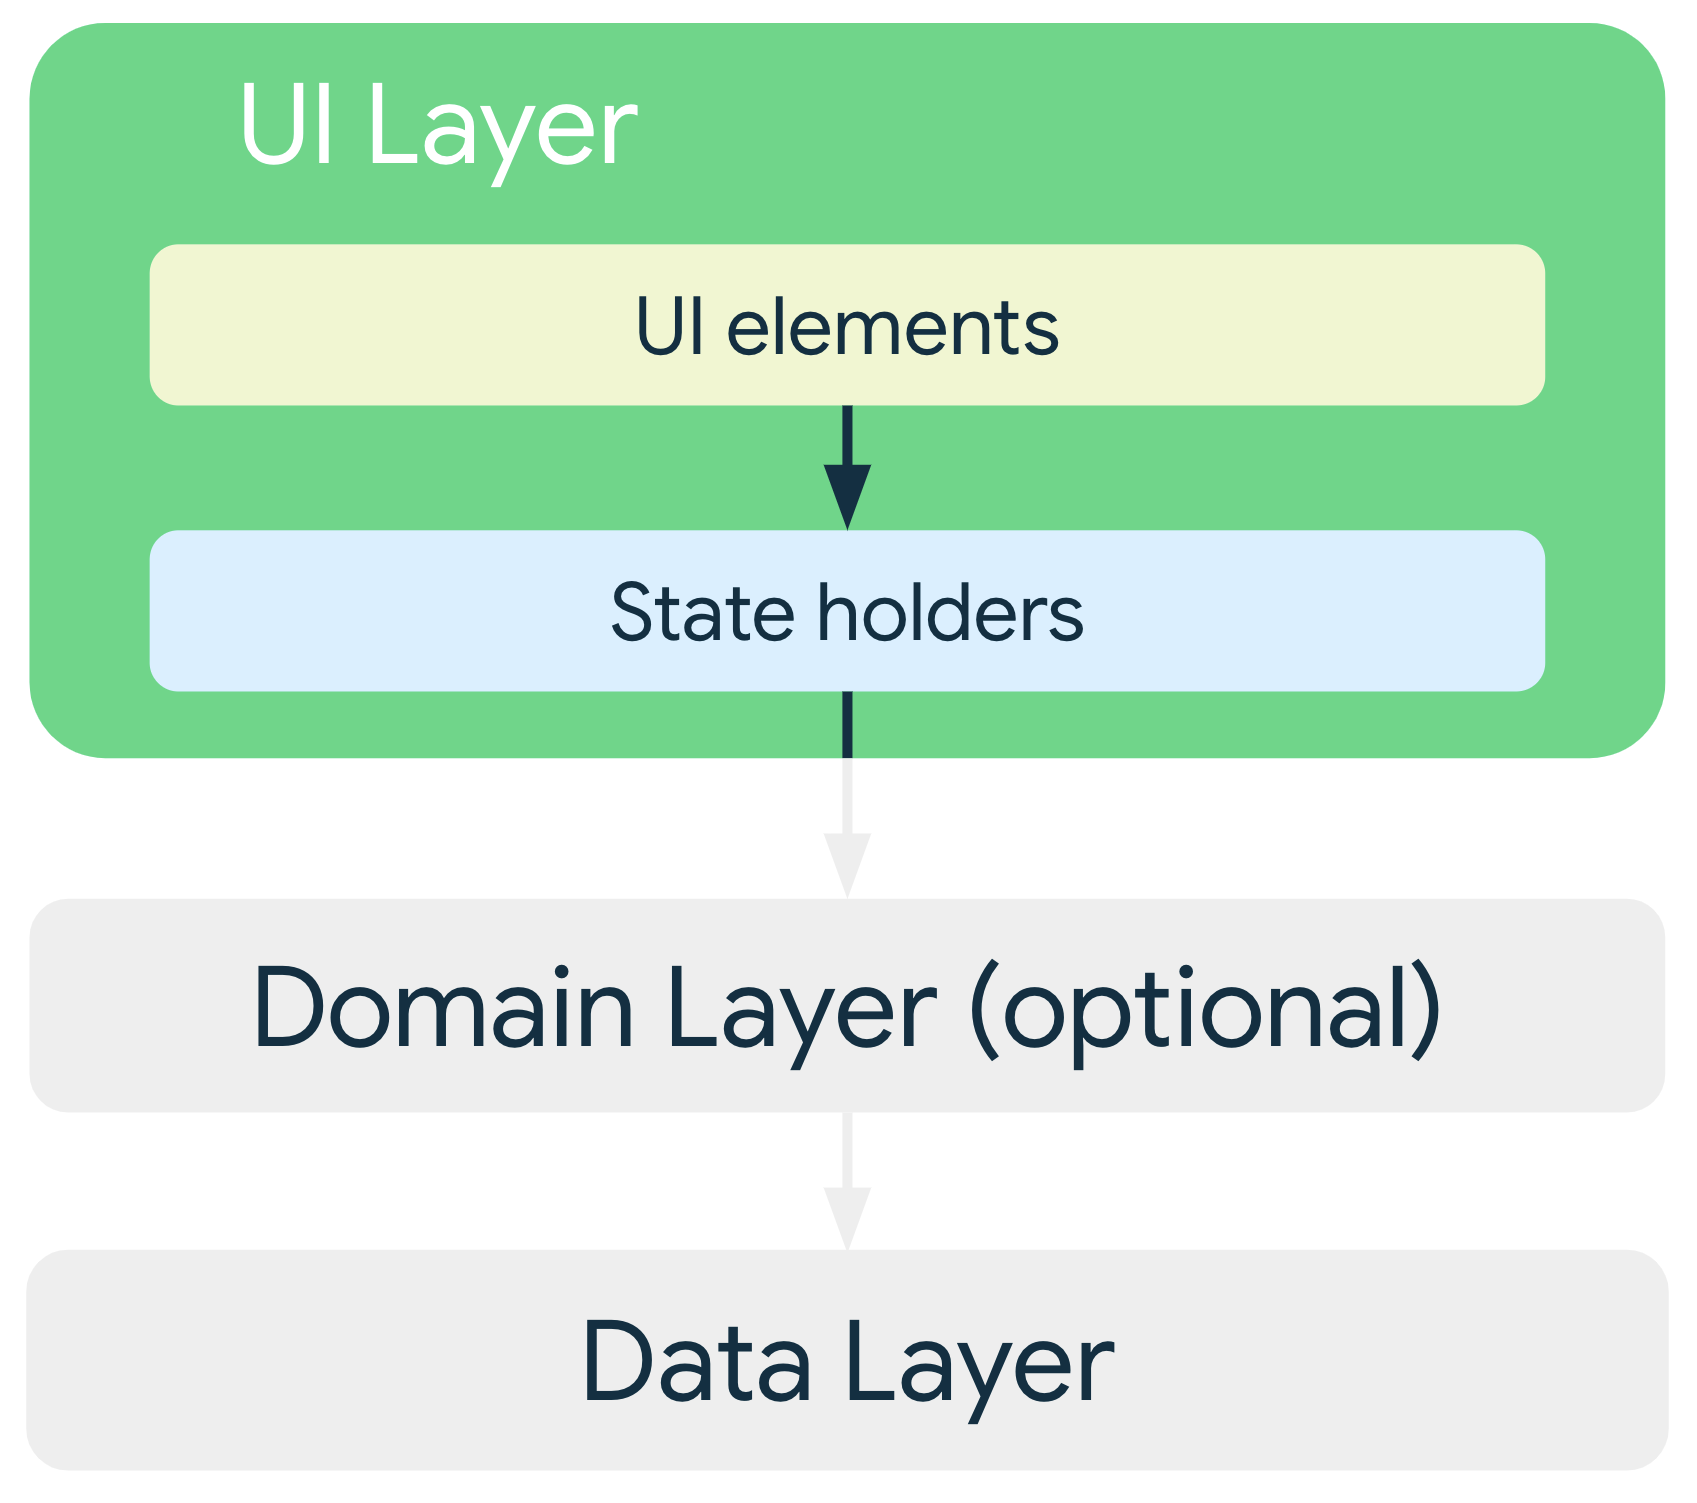 在典型架构中，界面层的界面元素依赖于状态容器，而状态容器又依赖于来自数据层或可选网域层的类。